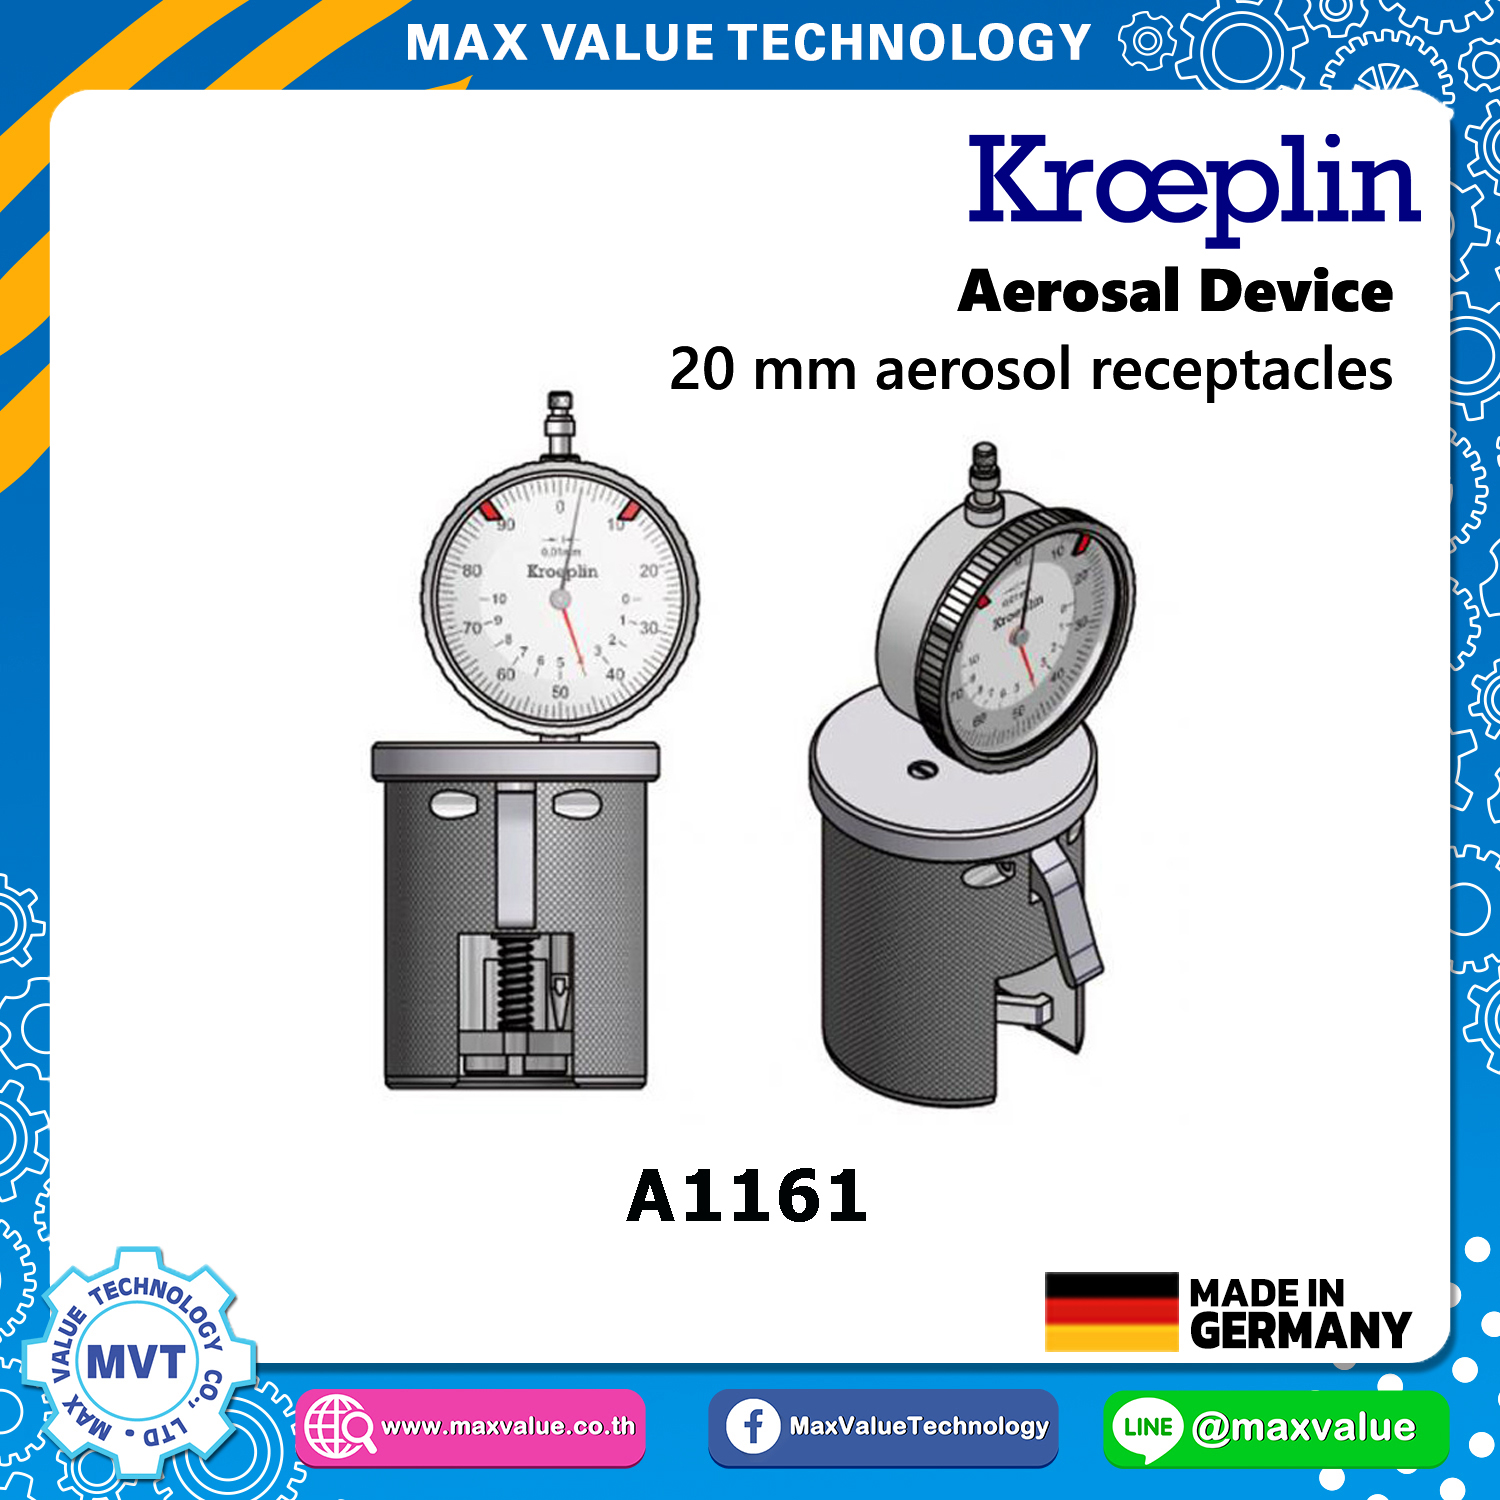 A1161/AE1161 - Aerosol devices - 20 mm aerosol receptacles